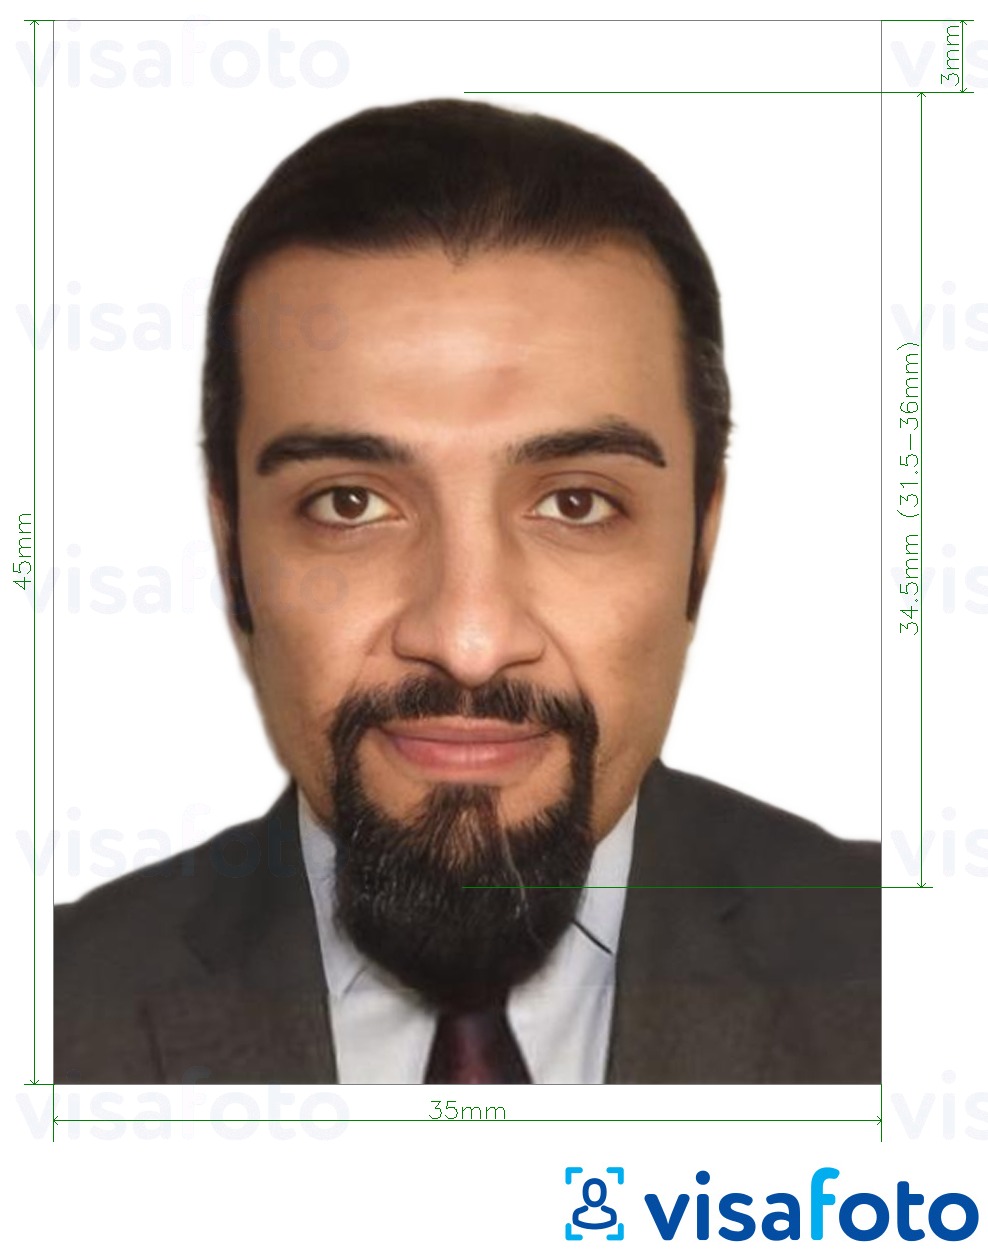 Contoh dari foto untuk Etiopia e-visa online 35x45 mm (3,5x4,5 cm) dengan ukuran spesifikasi yang tepat